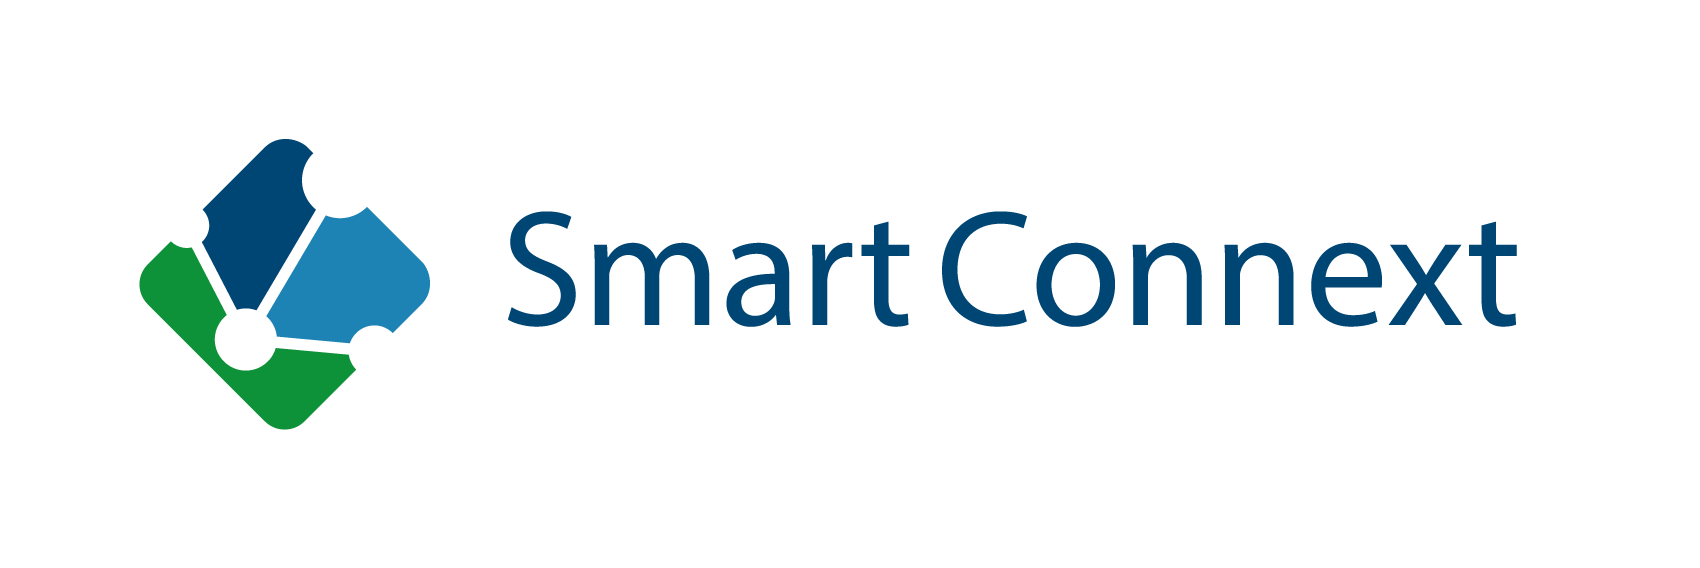 SmartConnext